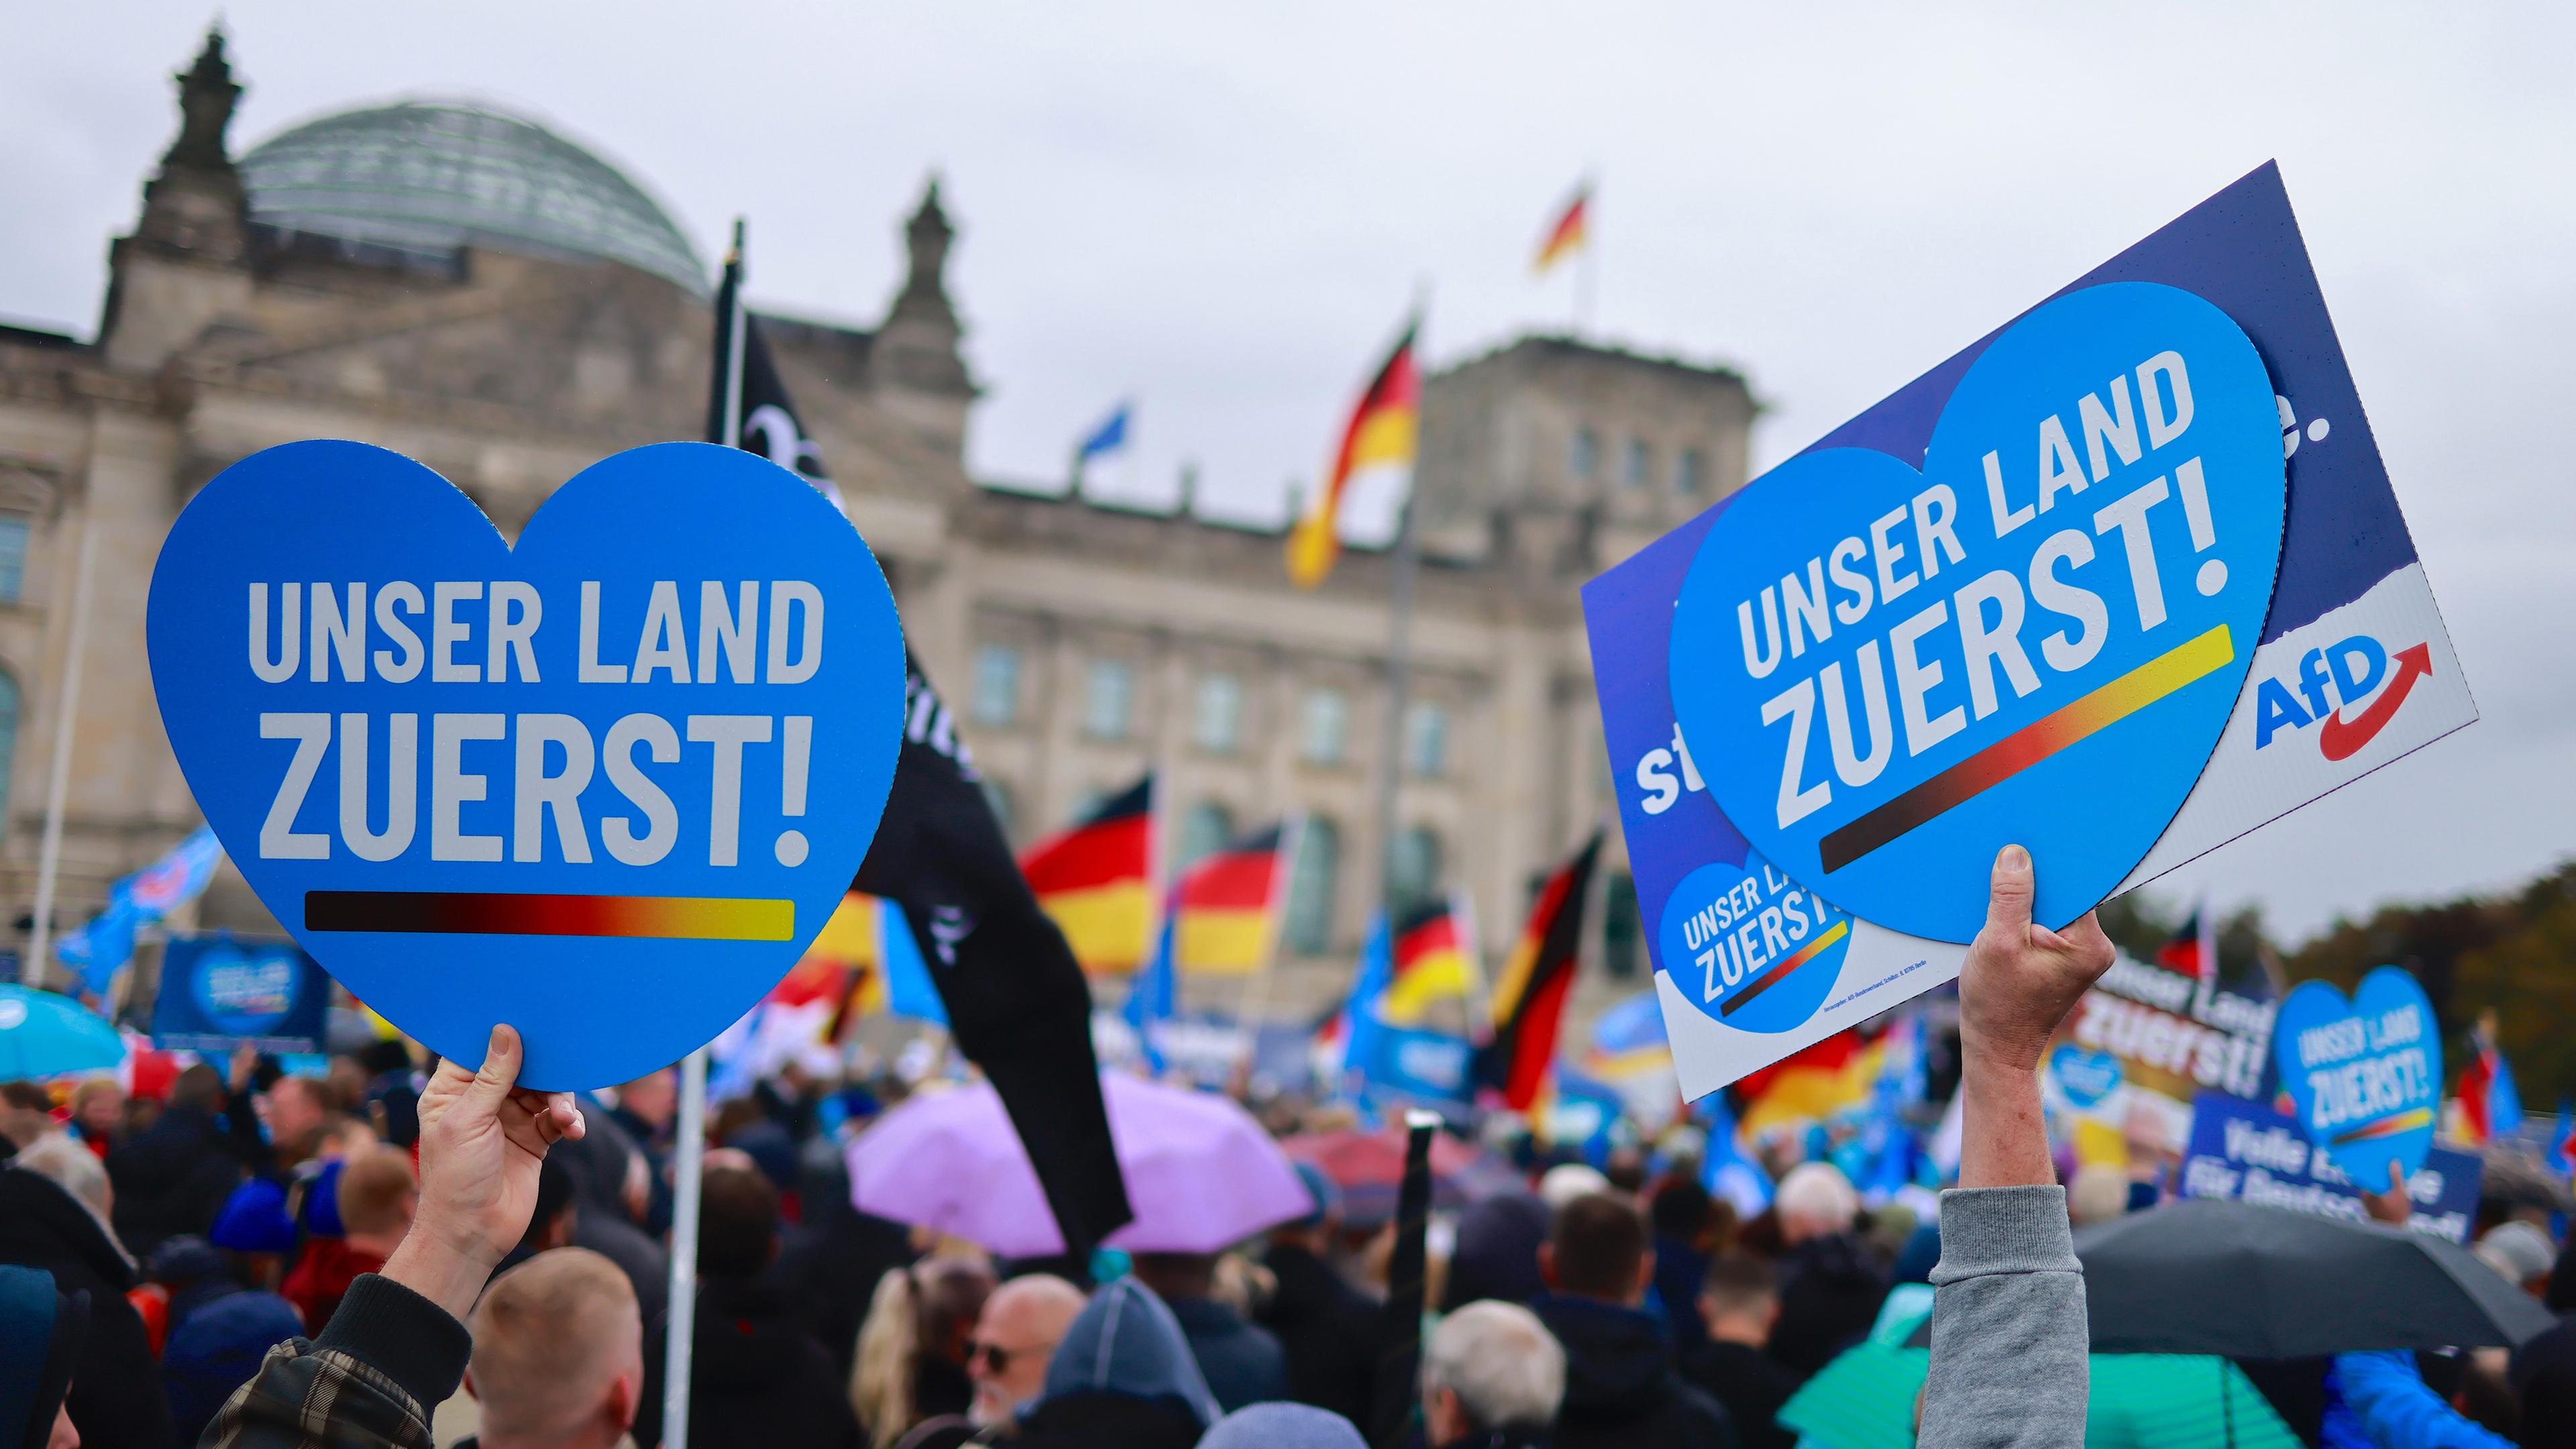 Archiv: Demonstranten halten Plakat vor Bundestag mit Schrift "Unser Land Zuerst!"